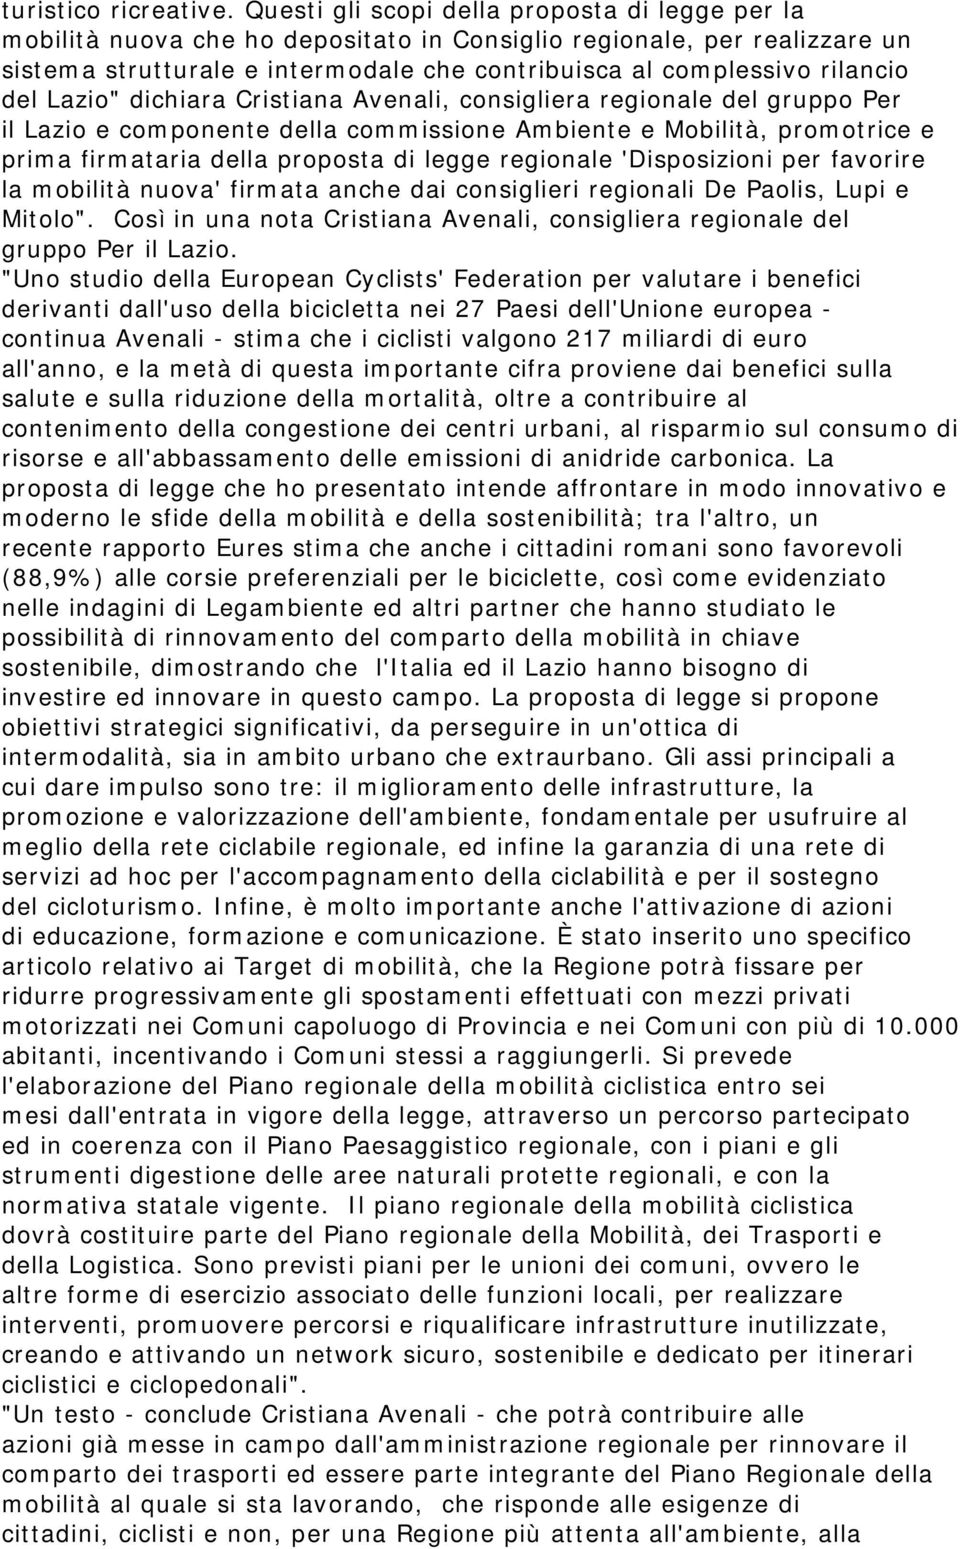 del Lazio" dichiara Cristiana Avenali, consigliera regionale del gruppo Per il Lazio e componente della commissione Ambiente e Mobilità, promotrice e prima firmataria della proposta di legge